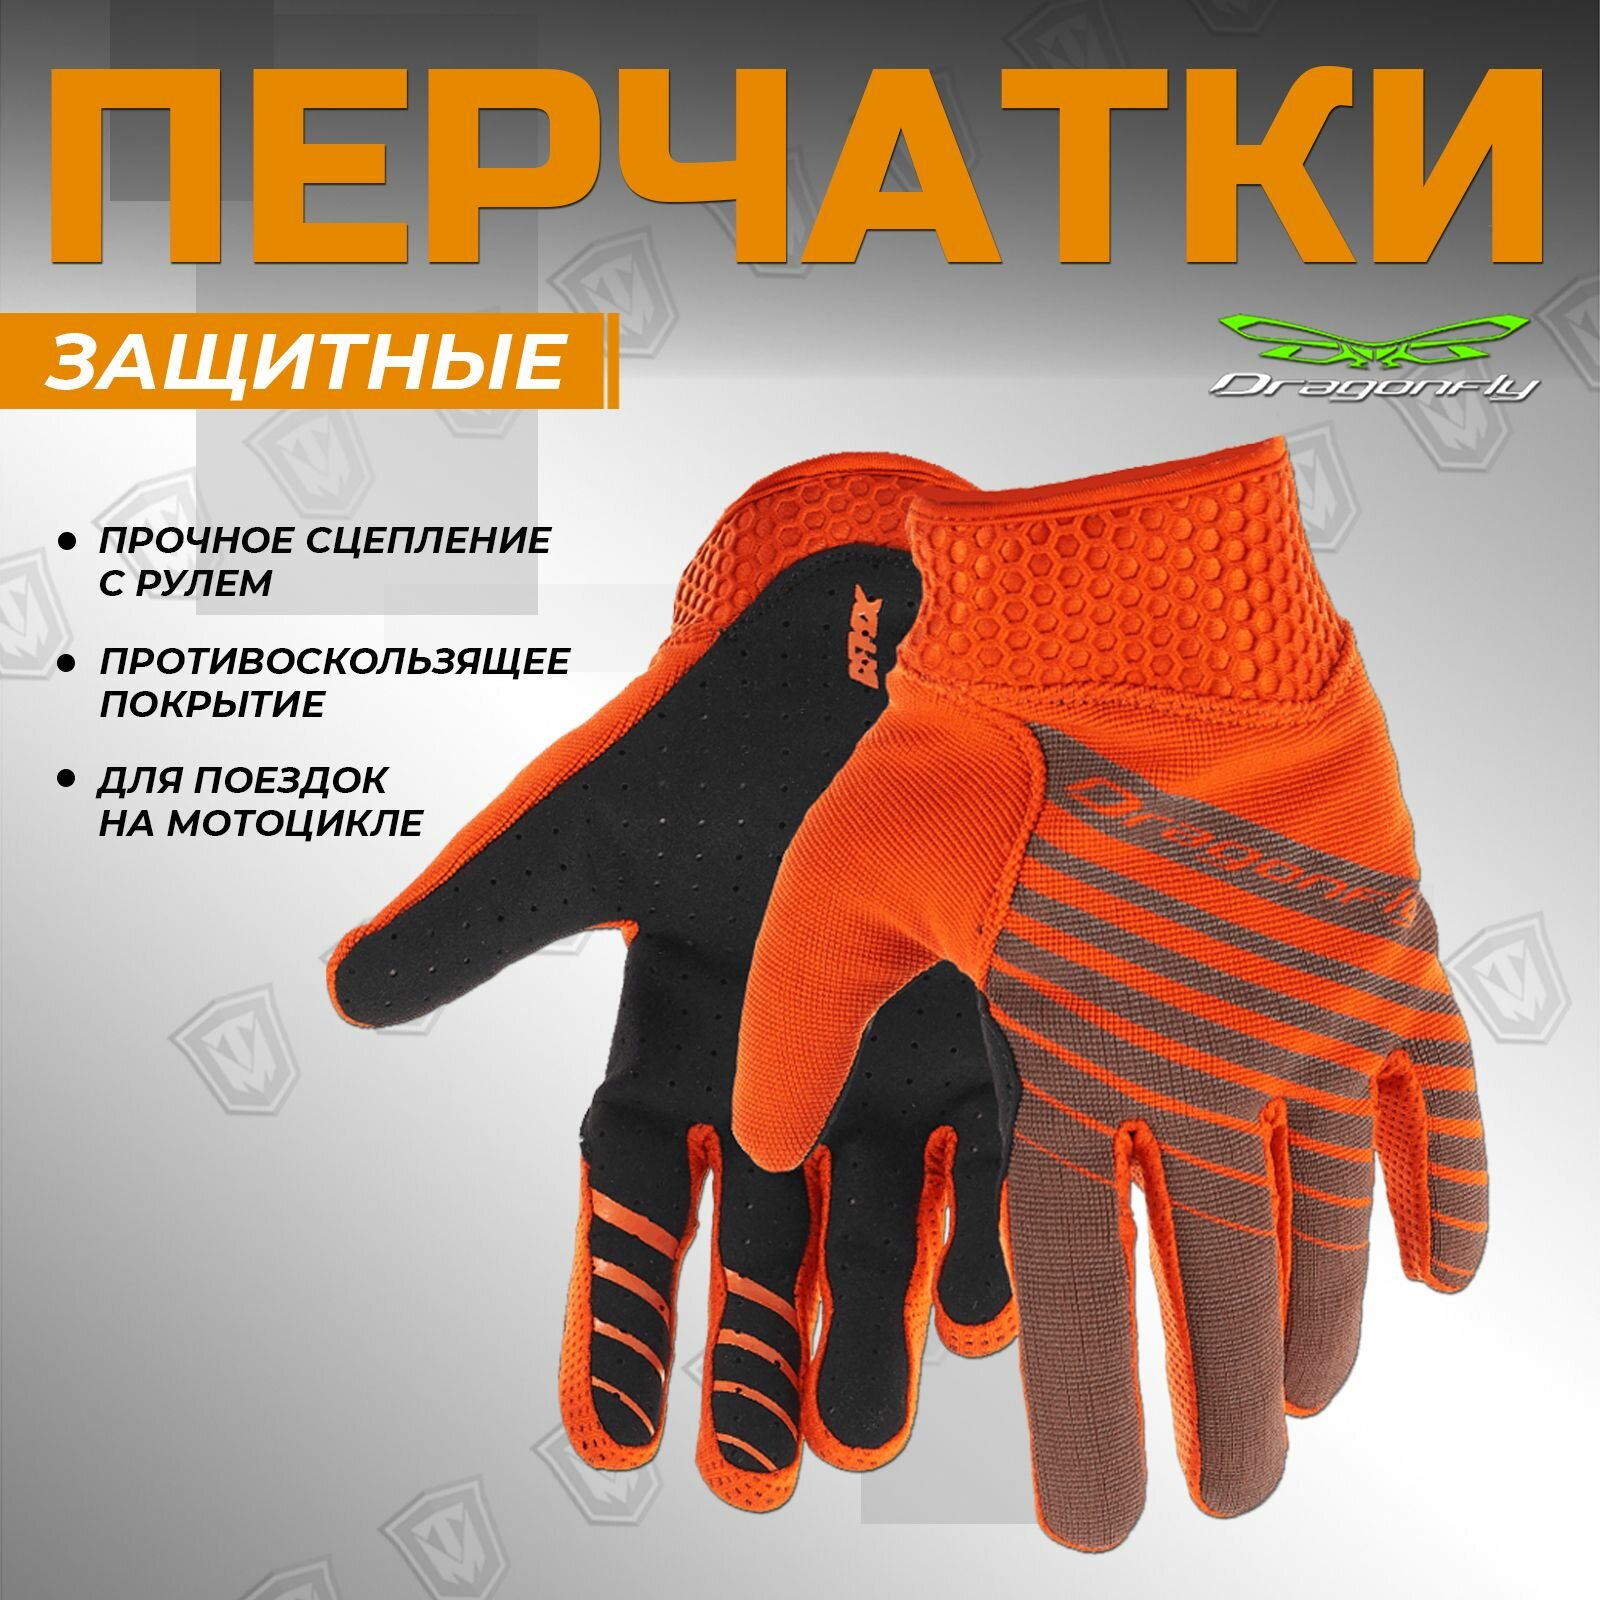 Перчатки Dragonfly MX для мотокросса/велосипеда, оранжевые, размер XL